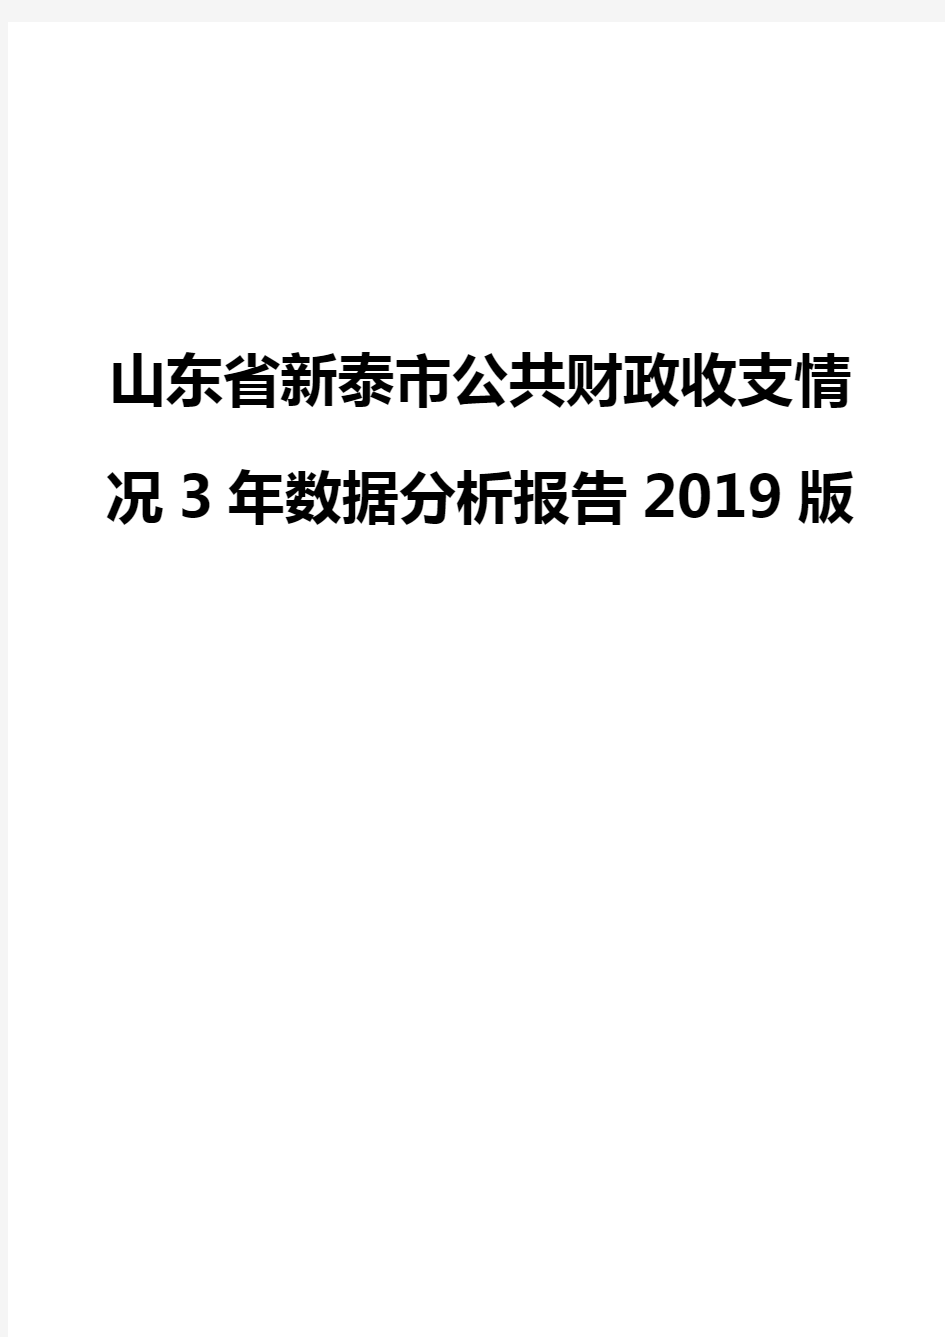 山东省新泰市公共财政收支情况3年数据分析报告2019版